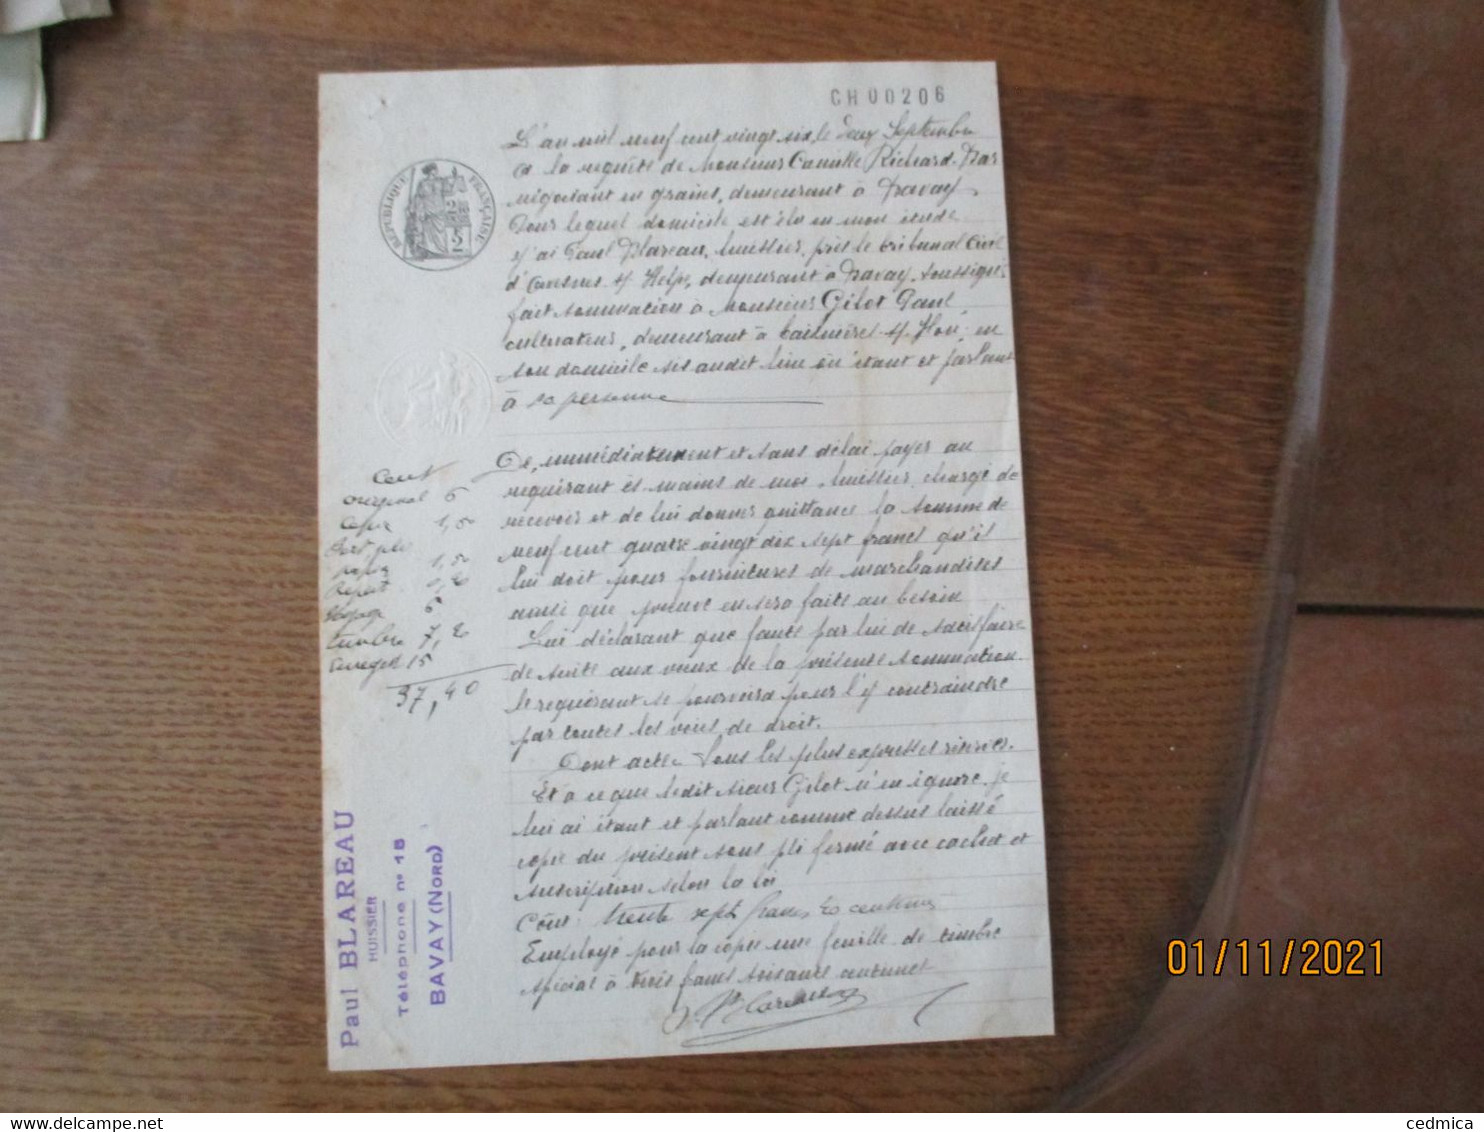 2 SEPTEMBRE 1926 A LA REQUÊTE DE M. CAMILLE BAS NEGOCIENT EN GRAINS A BAVAY J'AI PAUL BLAIREAU HUISSIER TIMBRES DIMENSIO - Manuscripts